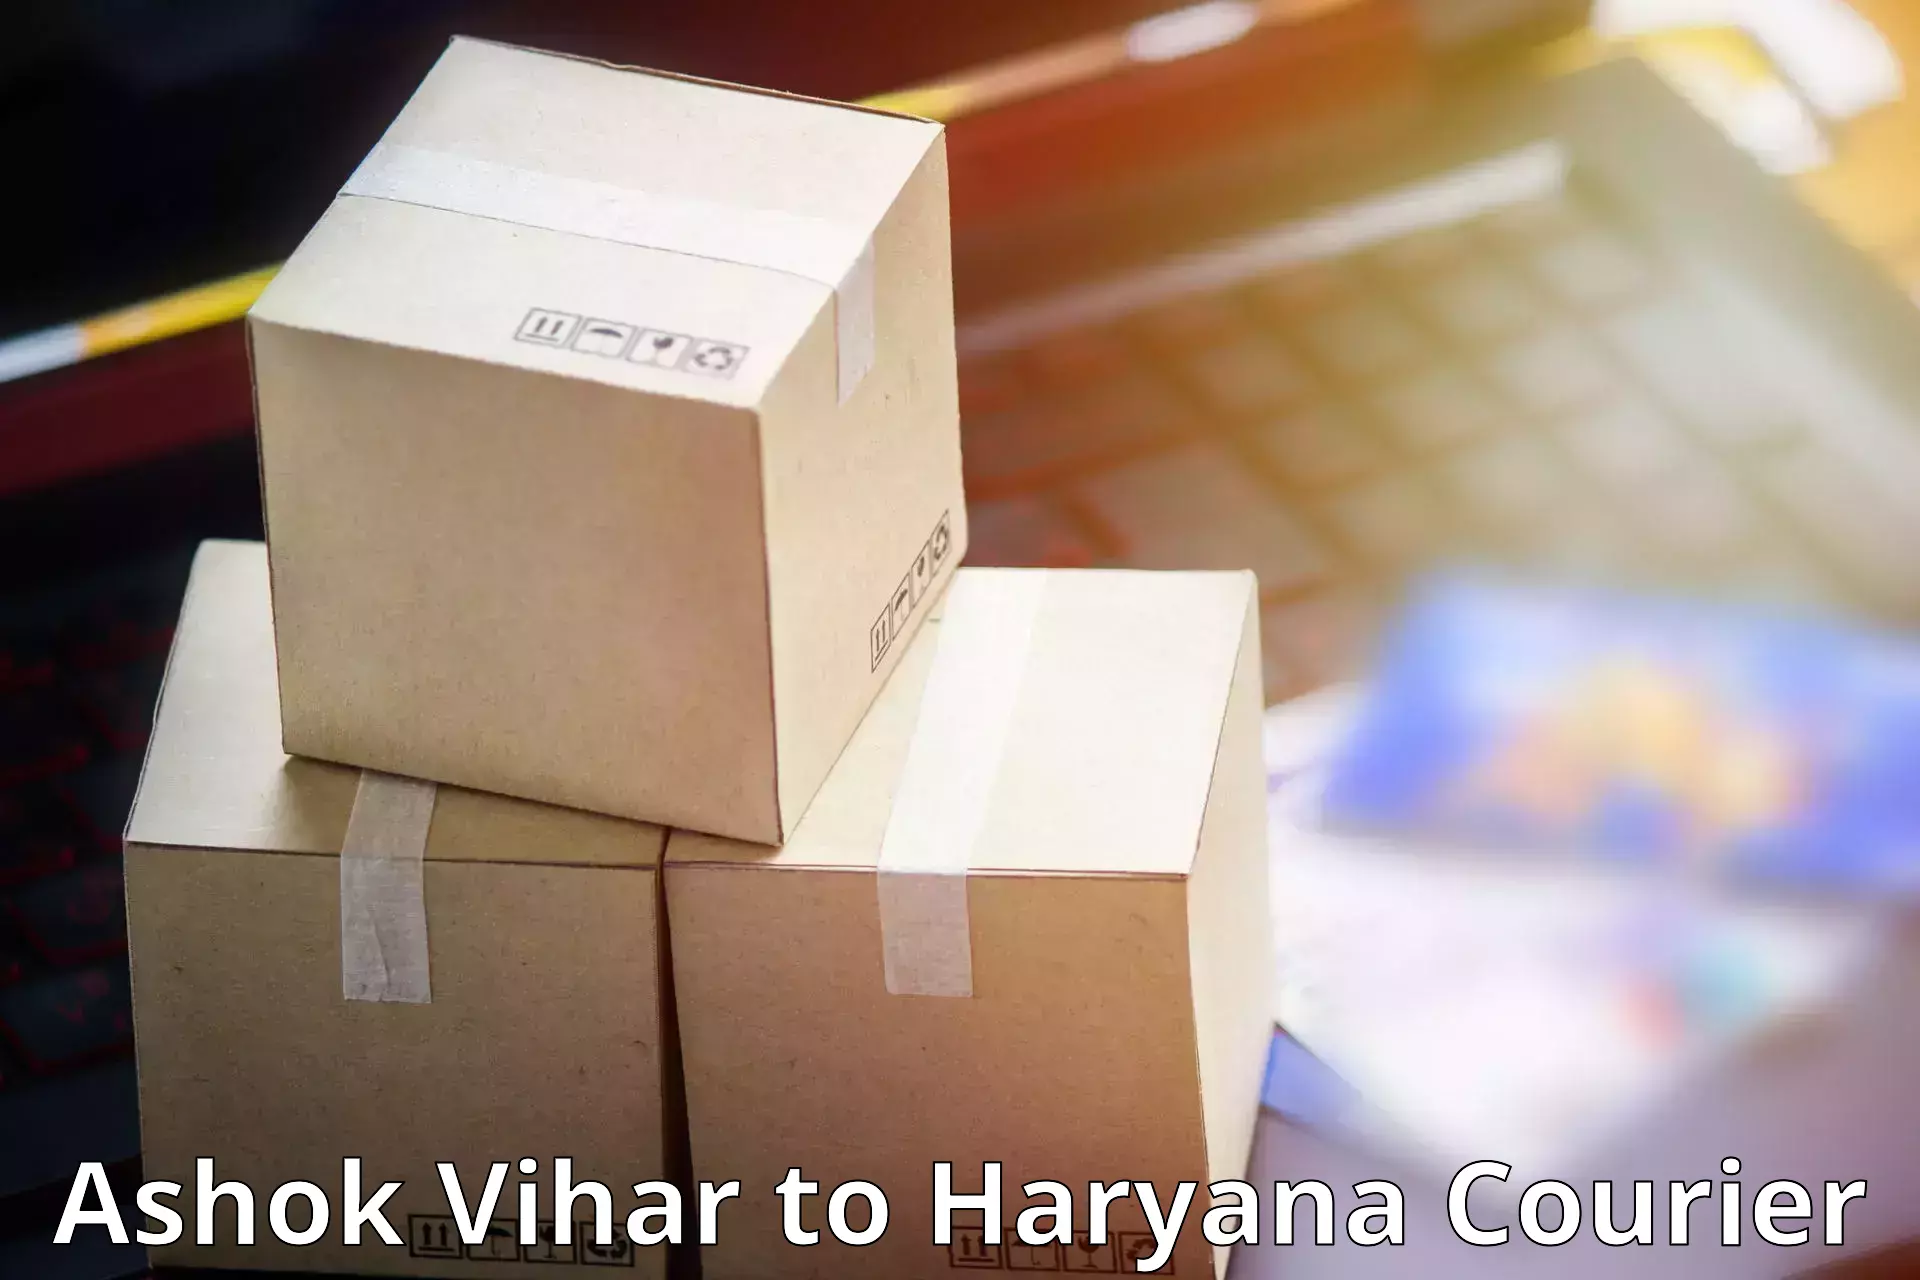 24/7 courier service Ashok Vihar to Haryana